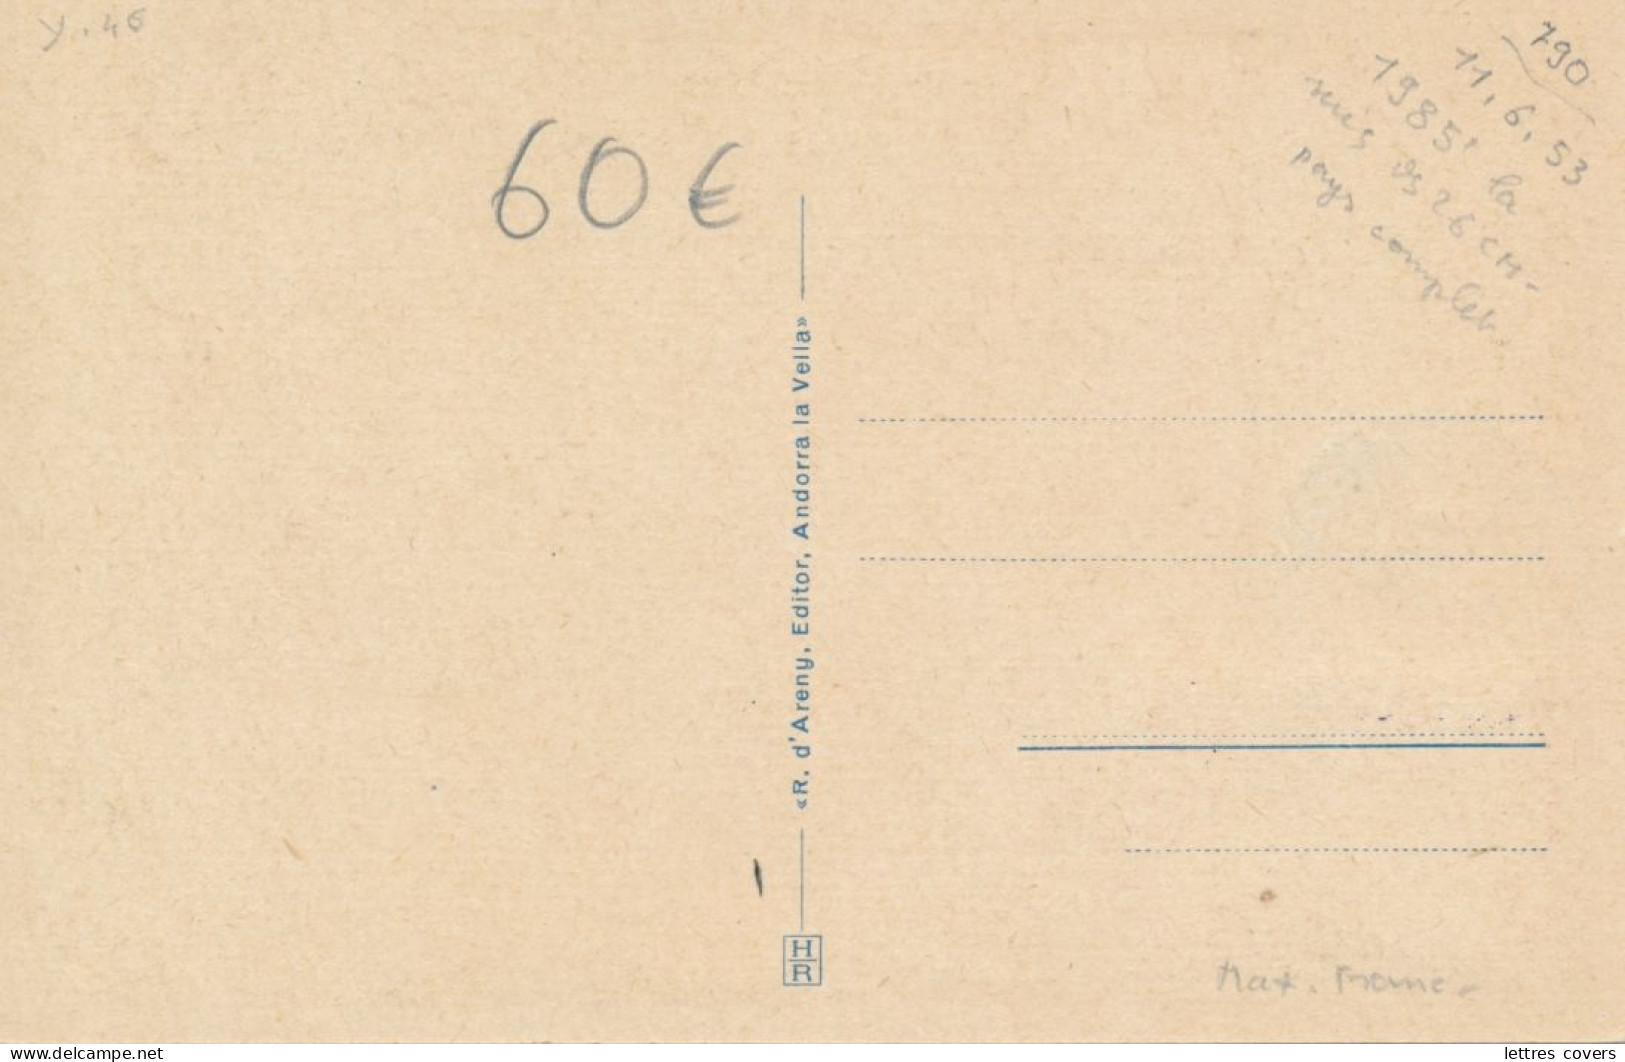 1935 ANDORRE Carte Maximum N° 46 20c/50c Ermita St Miguel D'Engolasters Obl 18/9/35  - Andorra Maxi Card PC - Maximum Cards